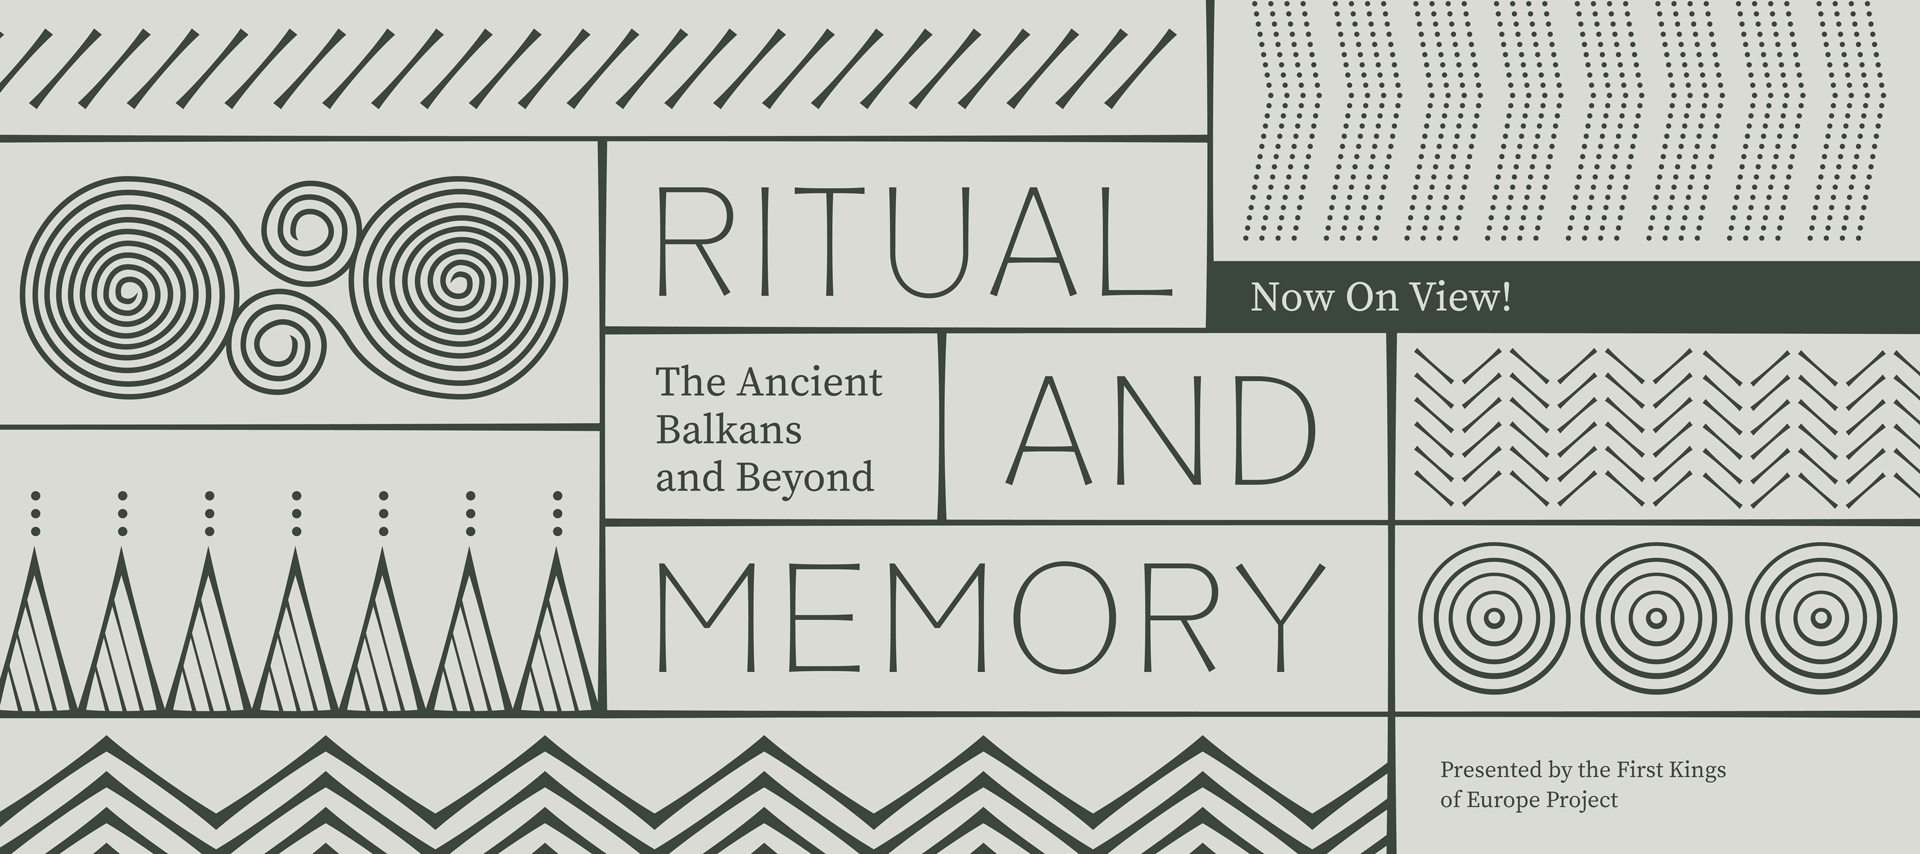 ritual-and-memory-slide.jpg